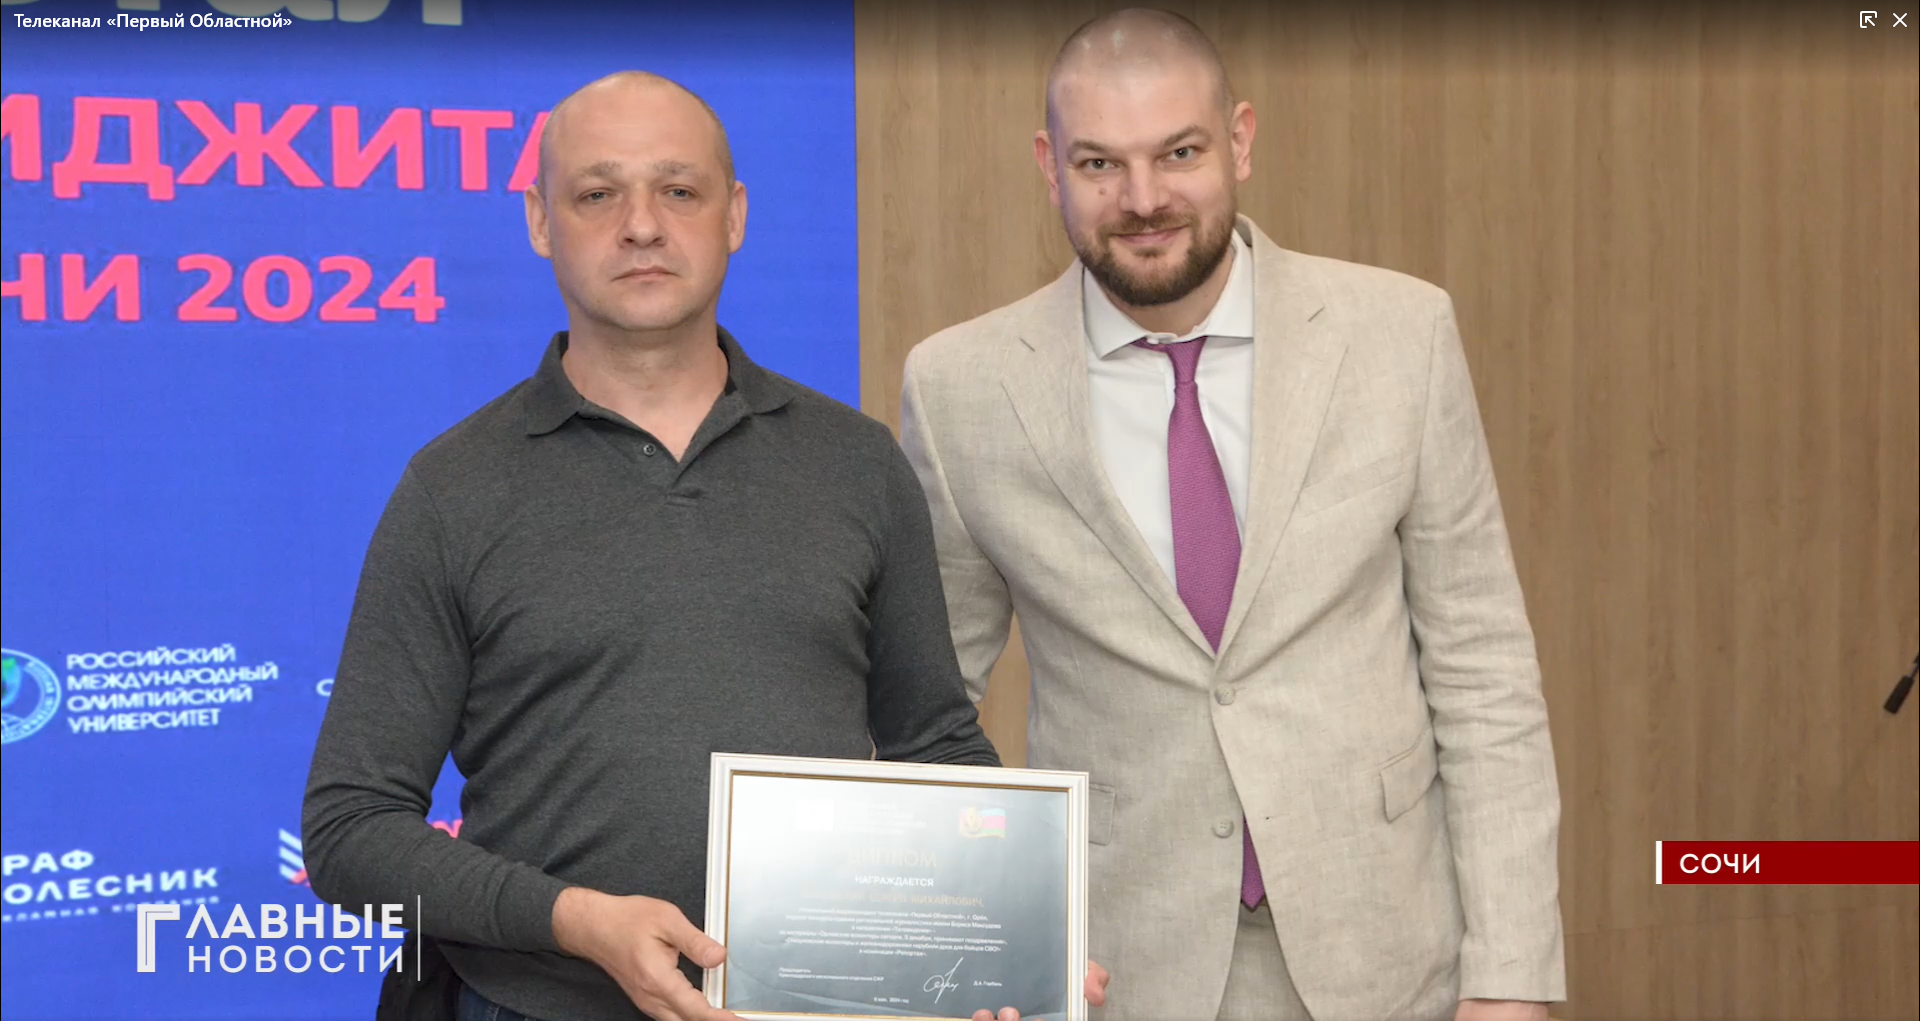 Журналист Сергей Быковский  стал лауреатом конкурса, посвященного военкору Борису Максудову.